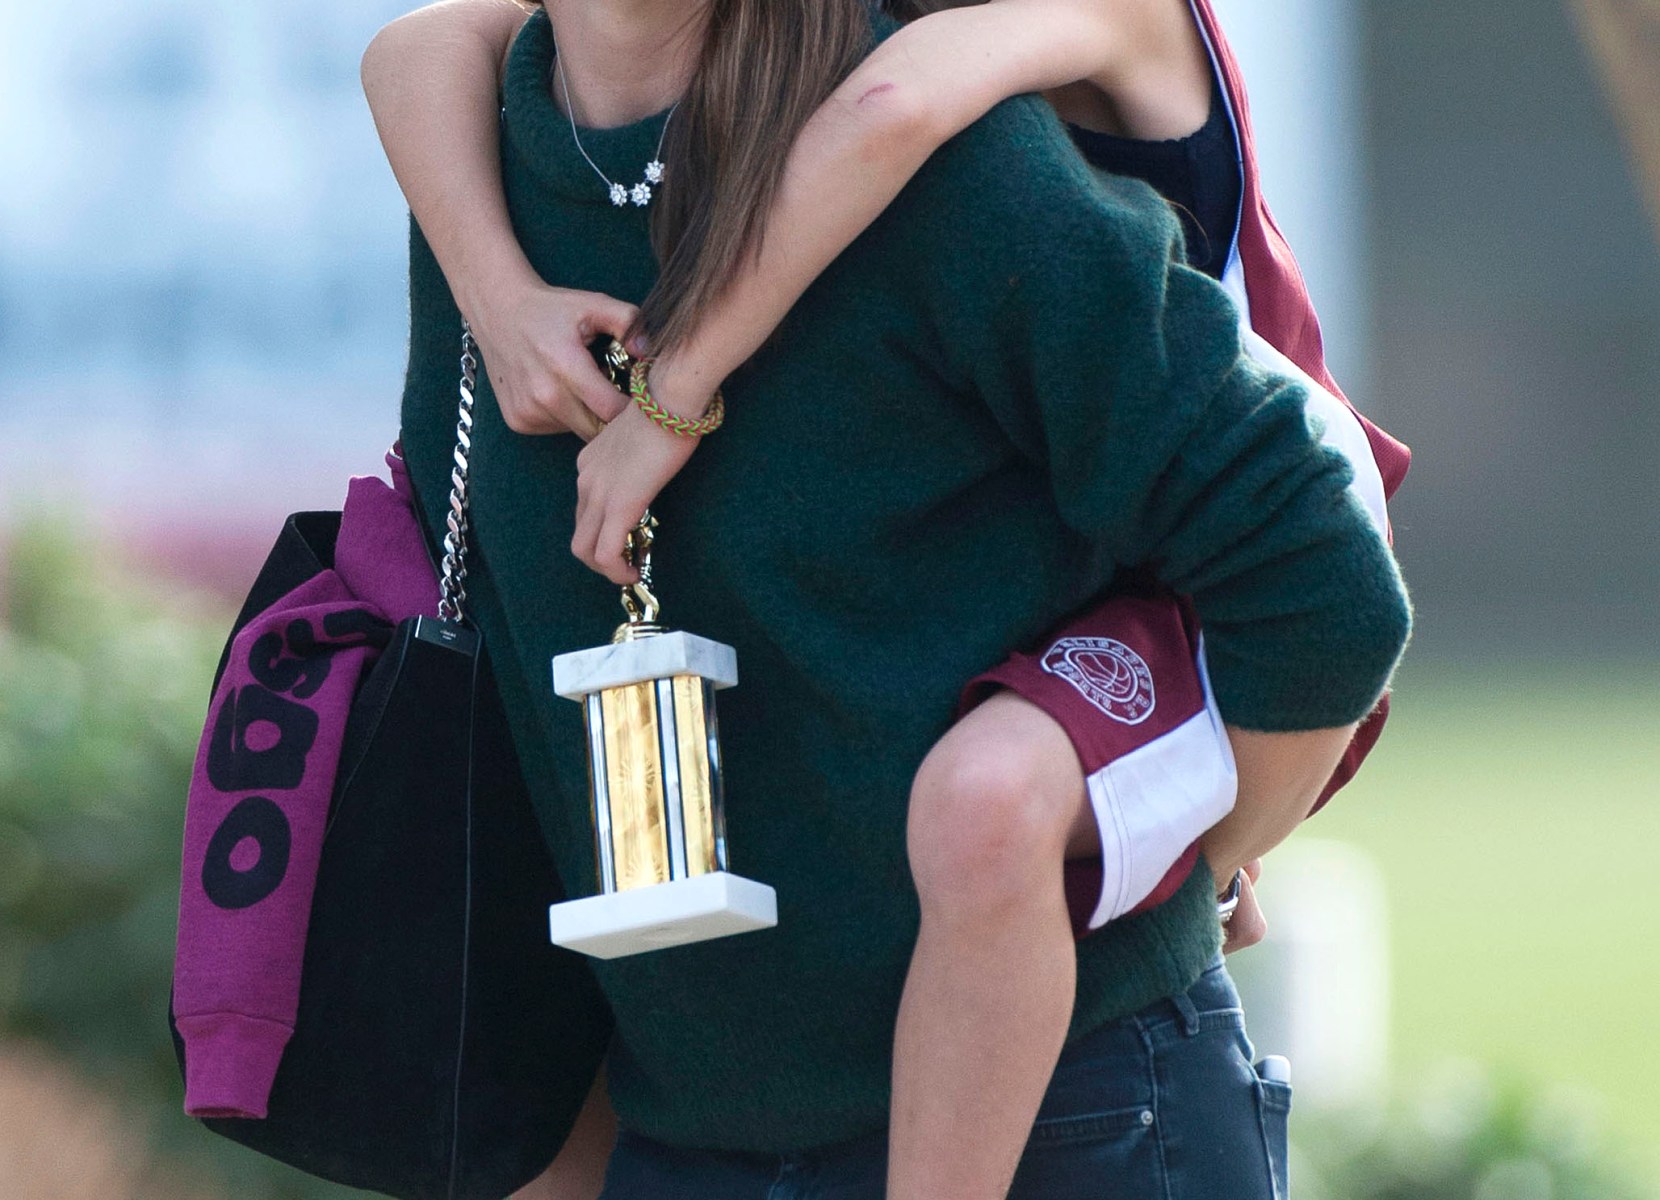 Jennifer Garner S Daughter Violet Affleck Looks All Grown Up In New Photos